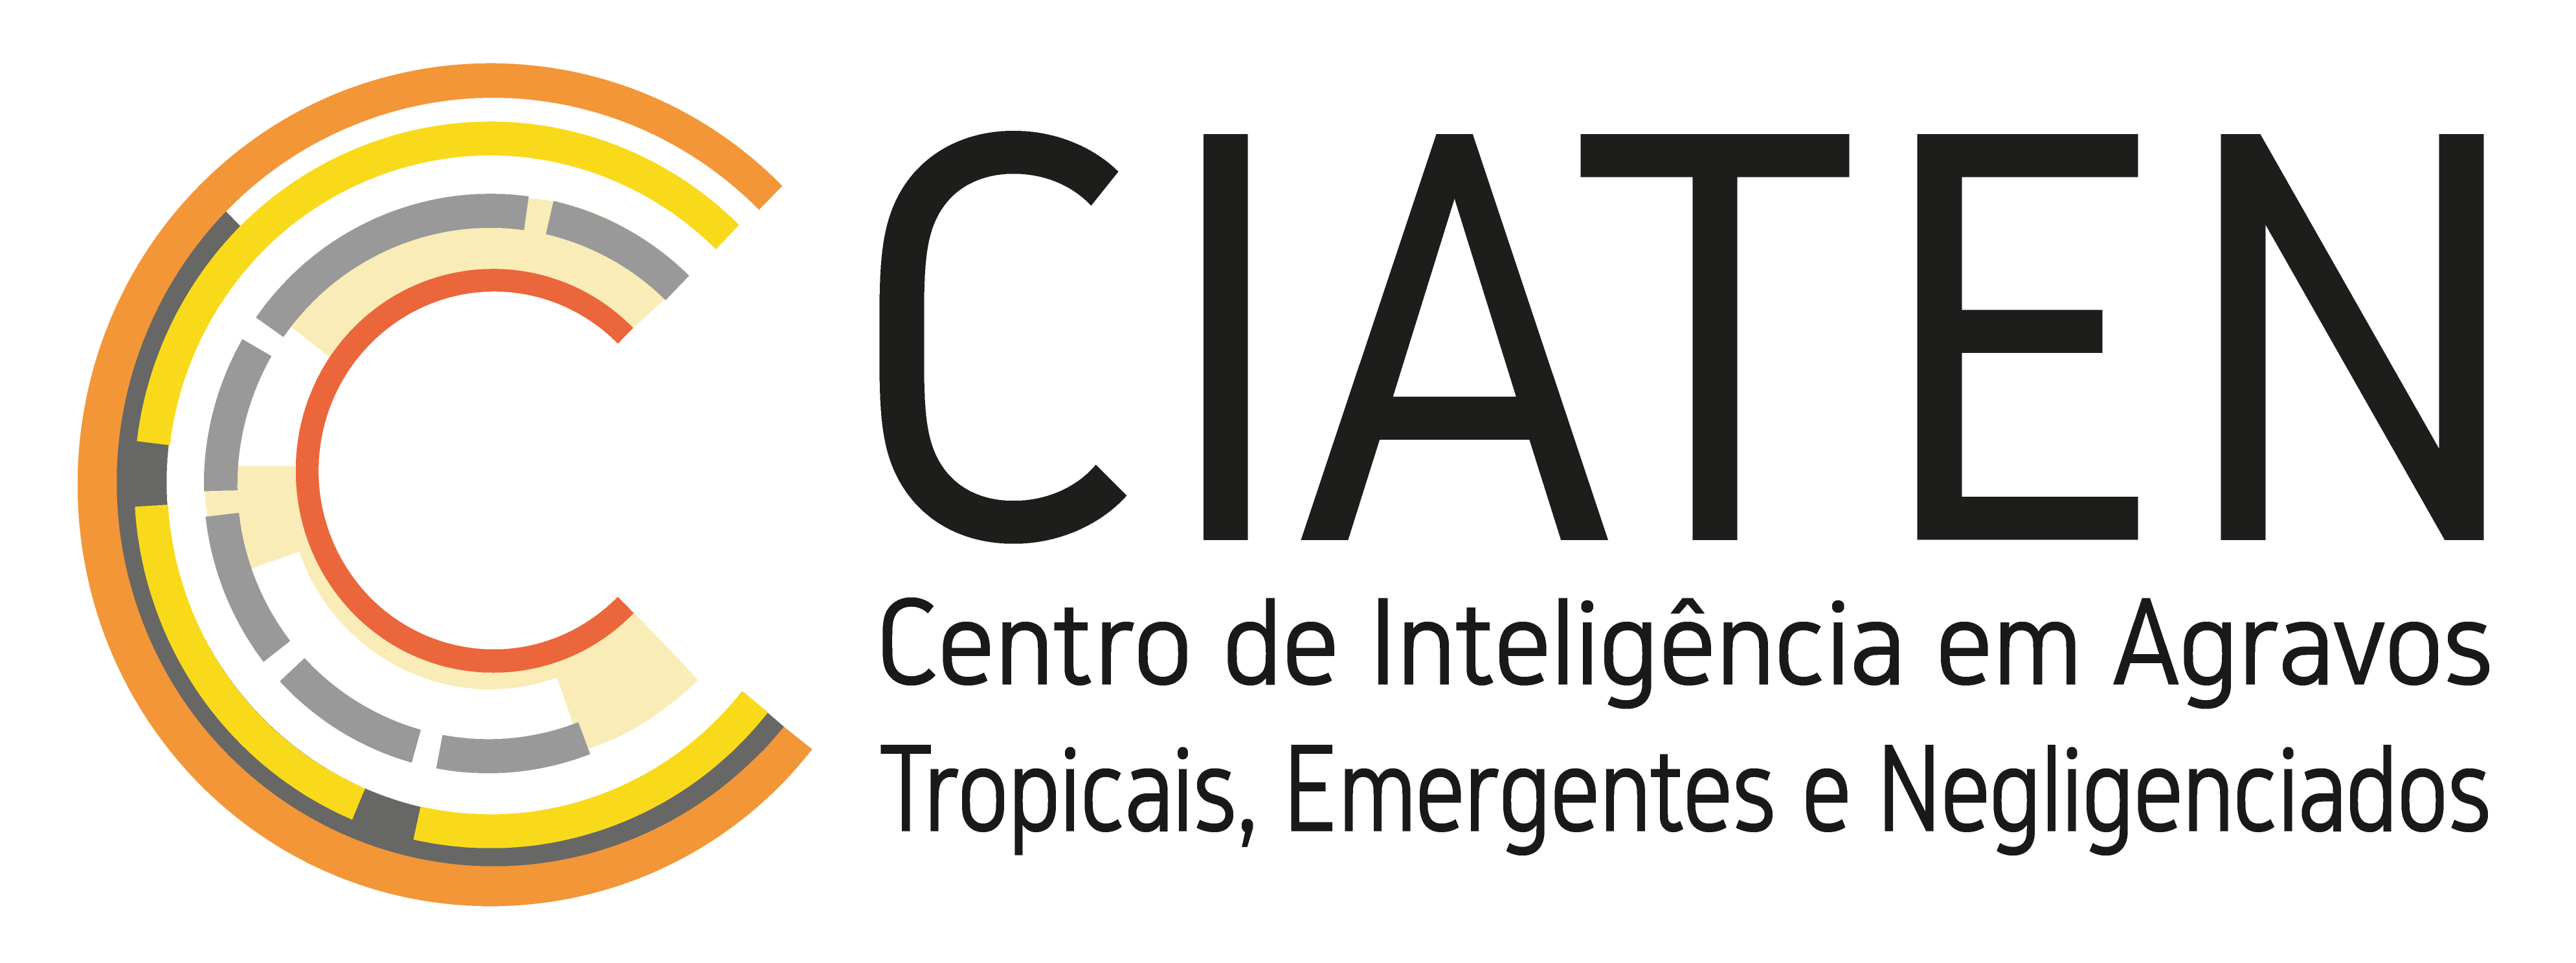 CAITEN logo